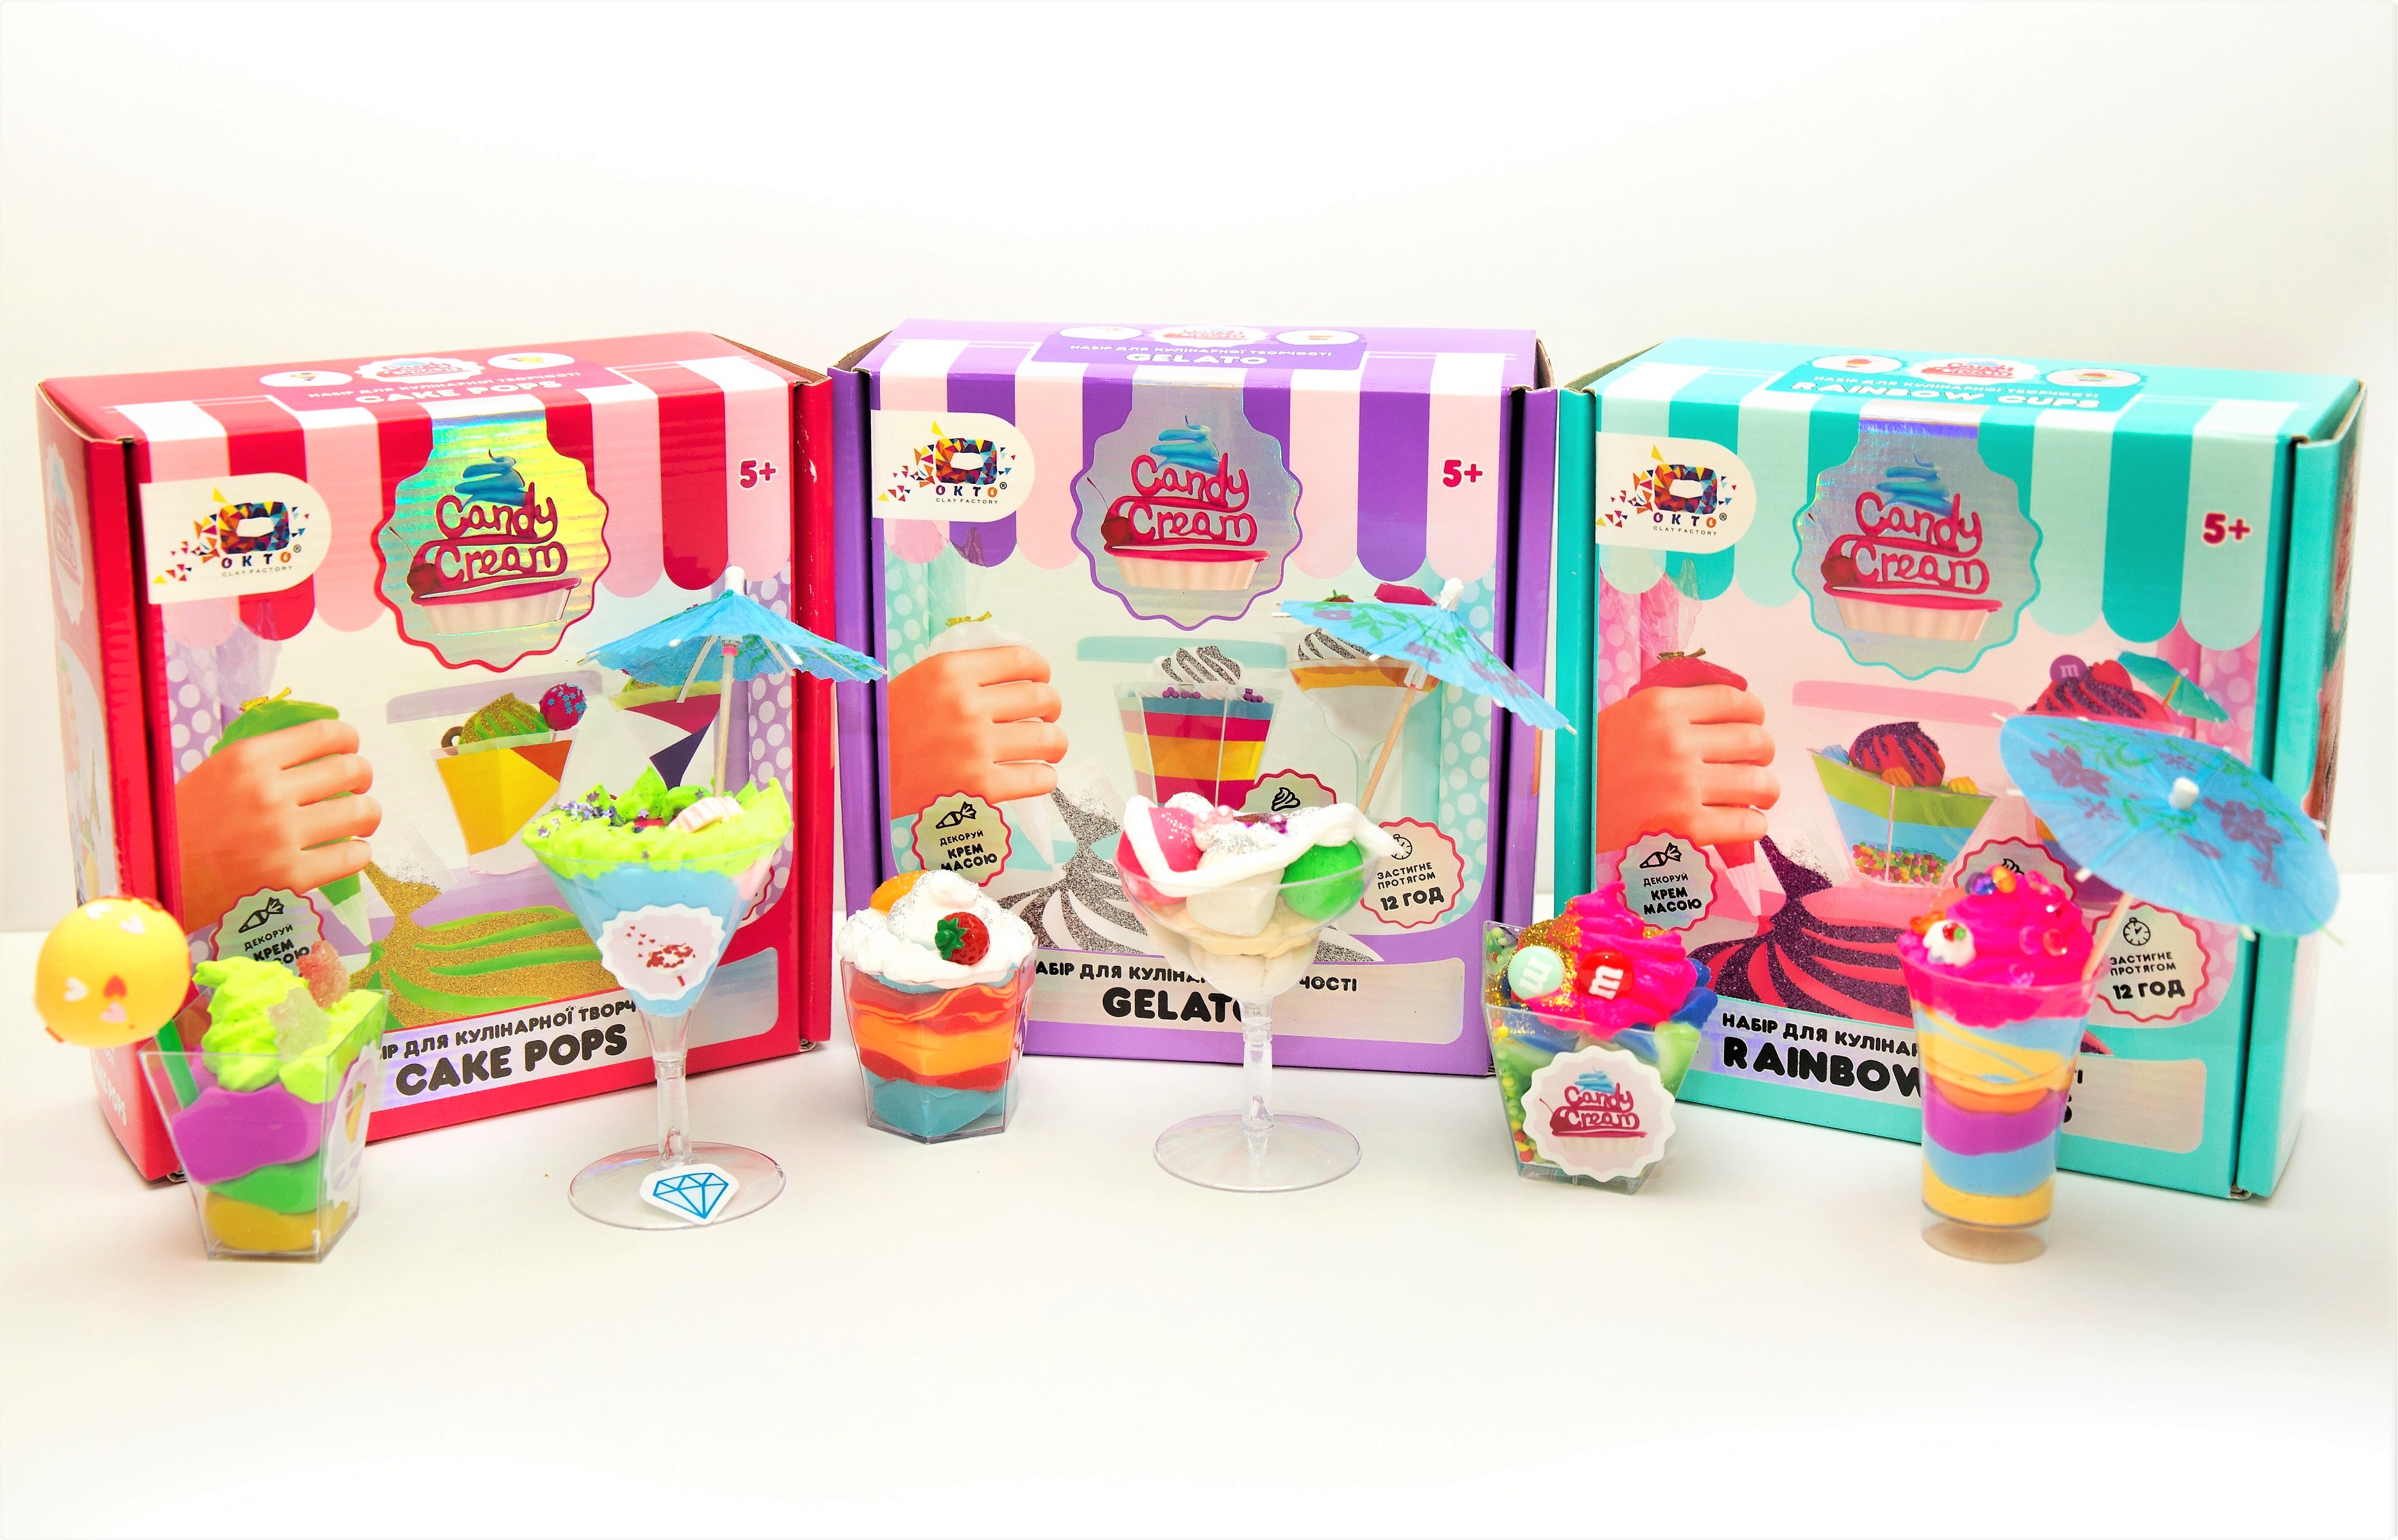 Knete Modellierung Knetmasse Kinder Spielzeug Geschenk Idee CAKE POPS Set